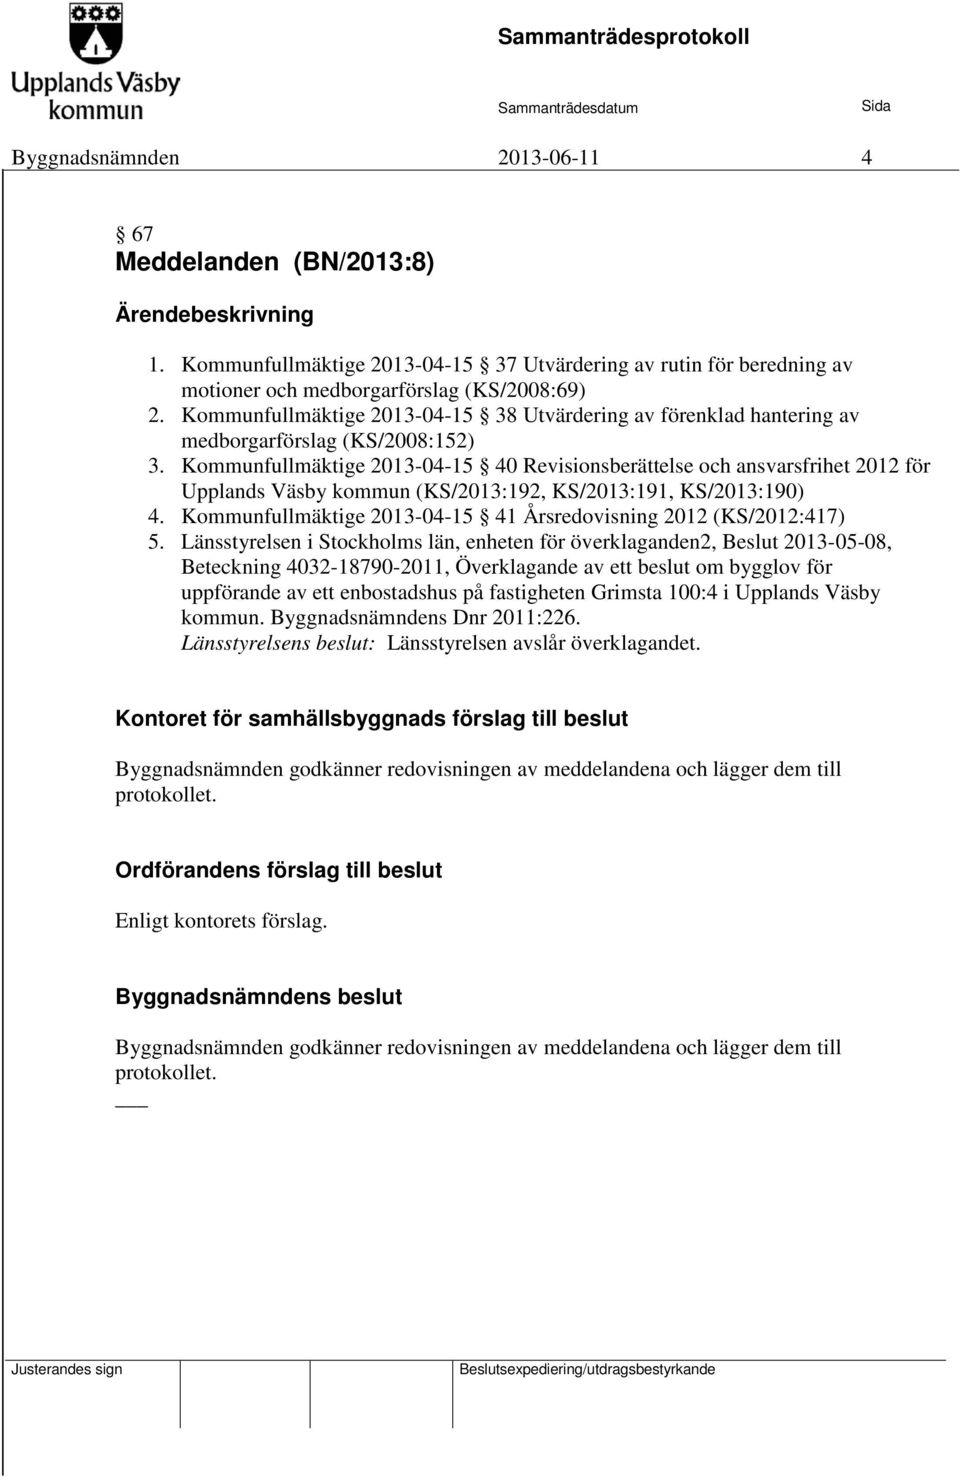 Kommunfullmäktige 2013-04-15 40 Revisionsberättelse och ansvarsfrihet 2012 för Upplands Väsby kommun (KS/2013:192, KS/2013:191, KS/2013:190) 4.